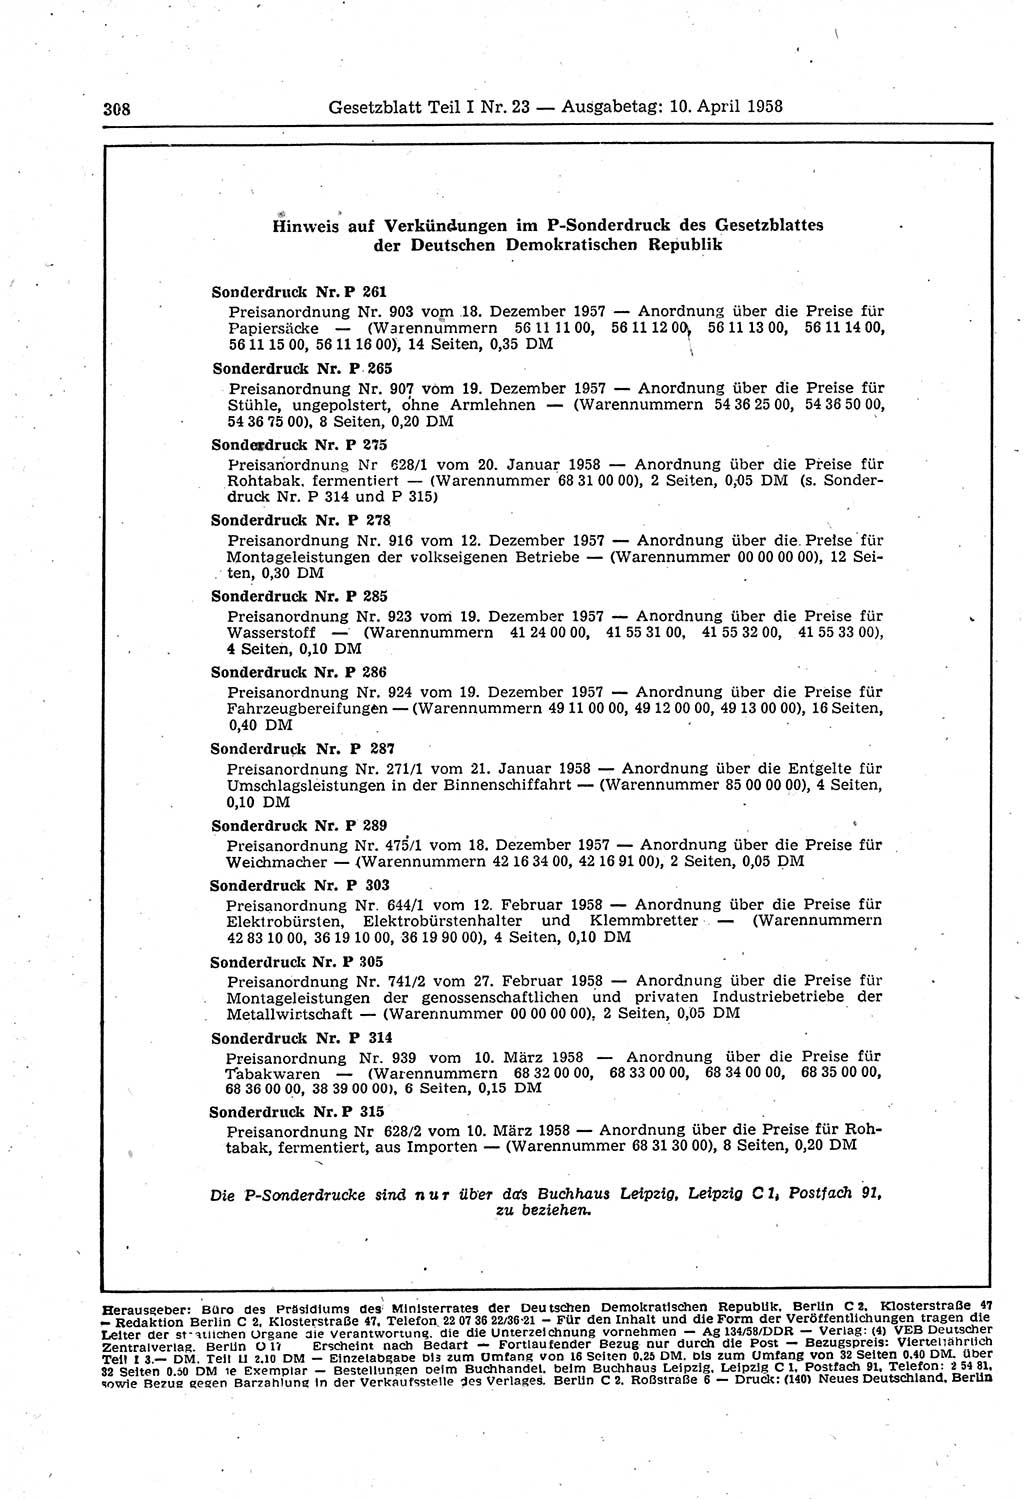 Gesetzblatt (GBl.) der Deutschen Demokratischen Republik (DDR) Teil Ⅰ 1958, Seite 308 (GBl. DDR Ⅰ 1958, S. 308)